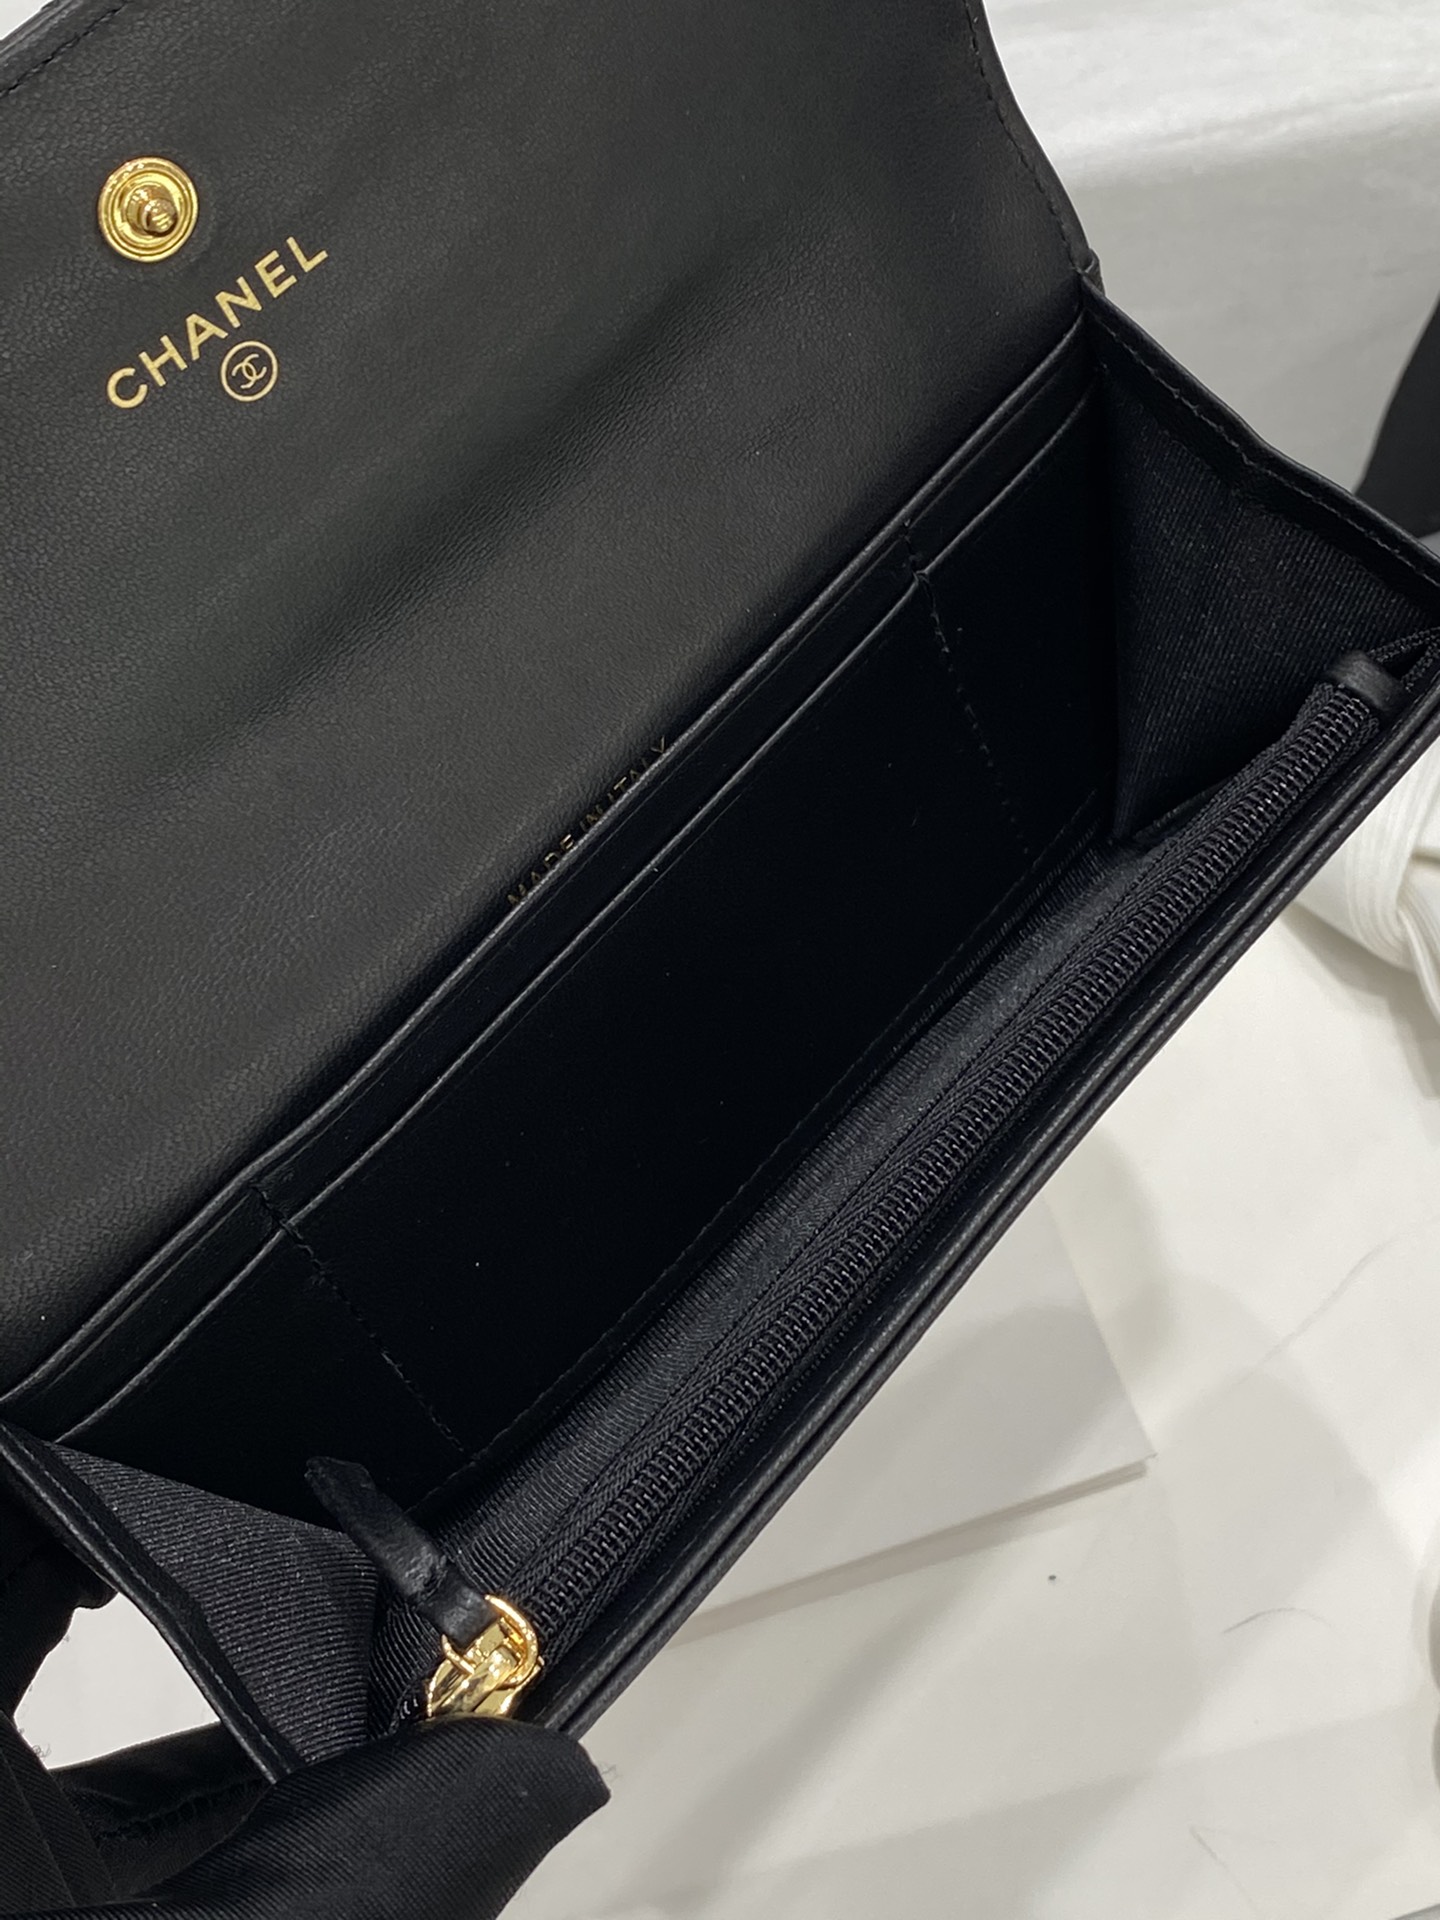 Chanel cf系列两折翻盖长款钱包 全新设计→ 大菱格 大双C编织logo 小羊皮 10*19.5*2.5cm